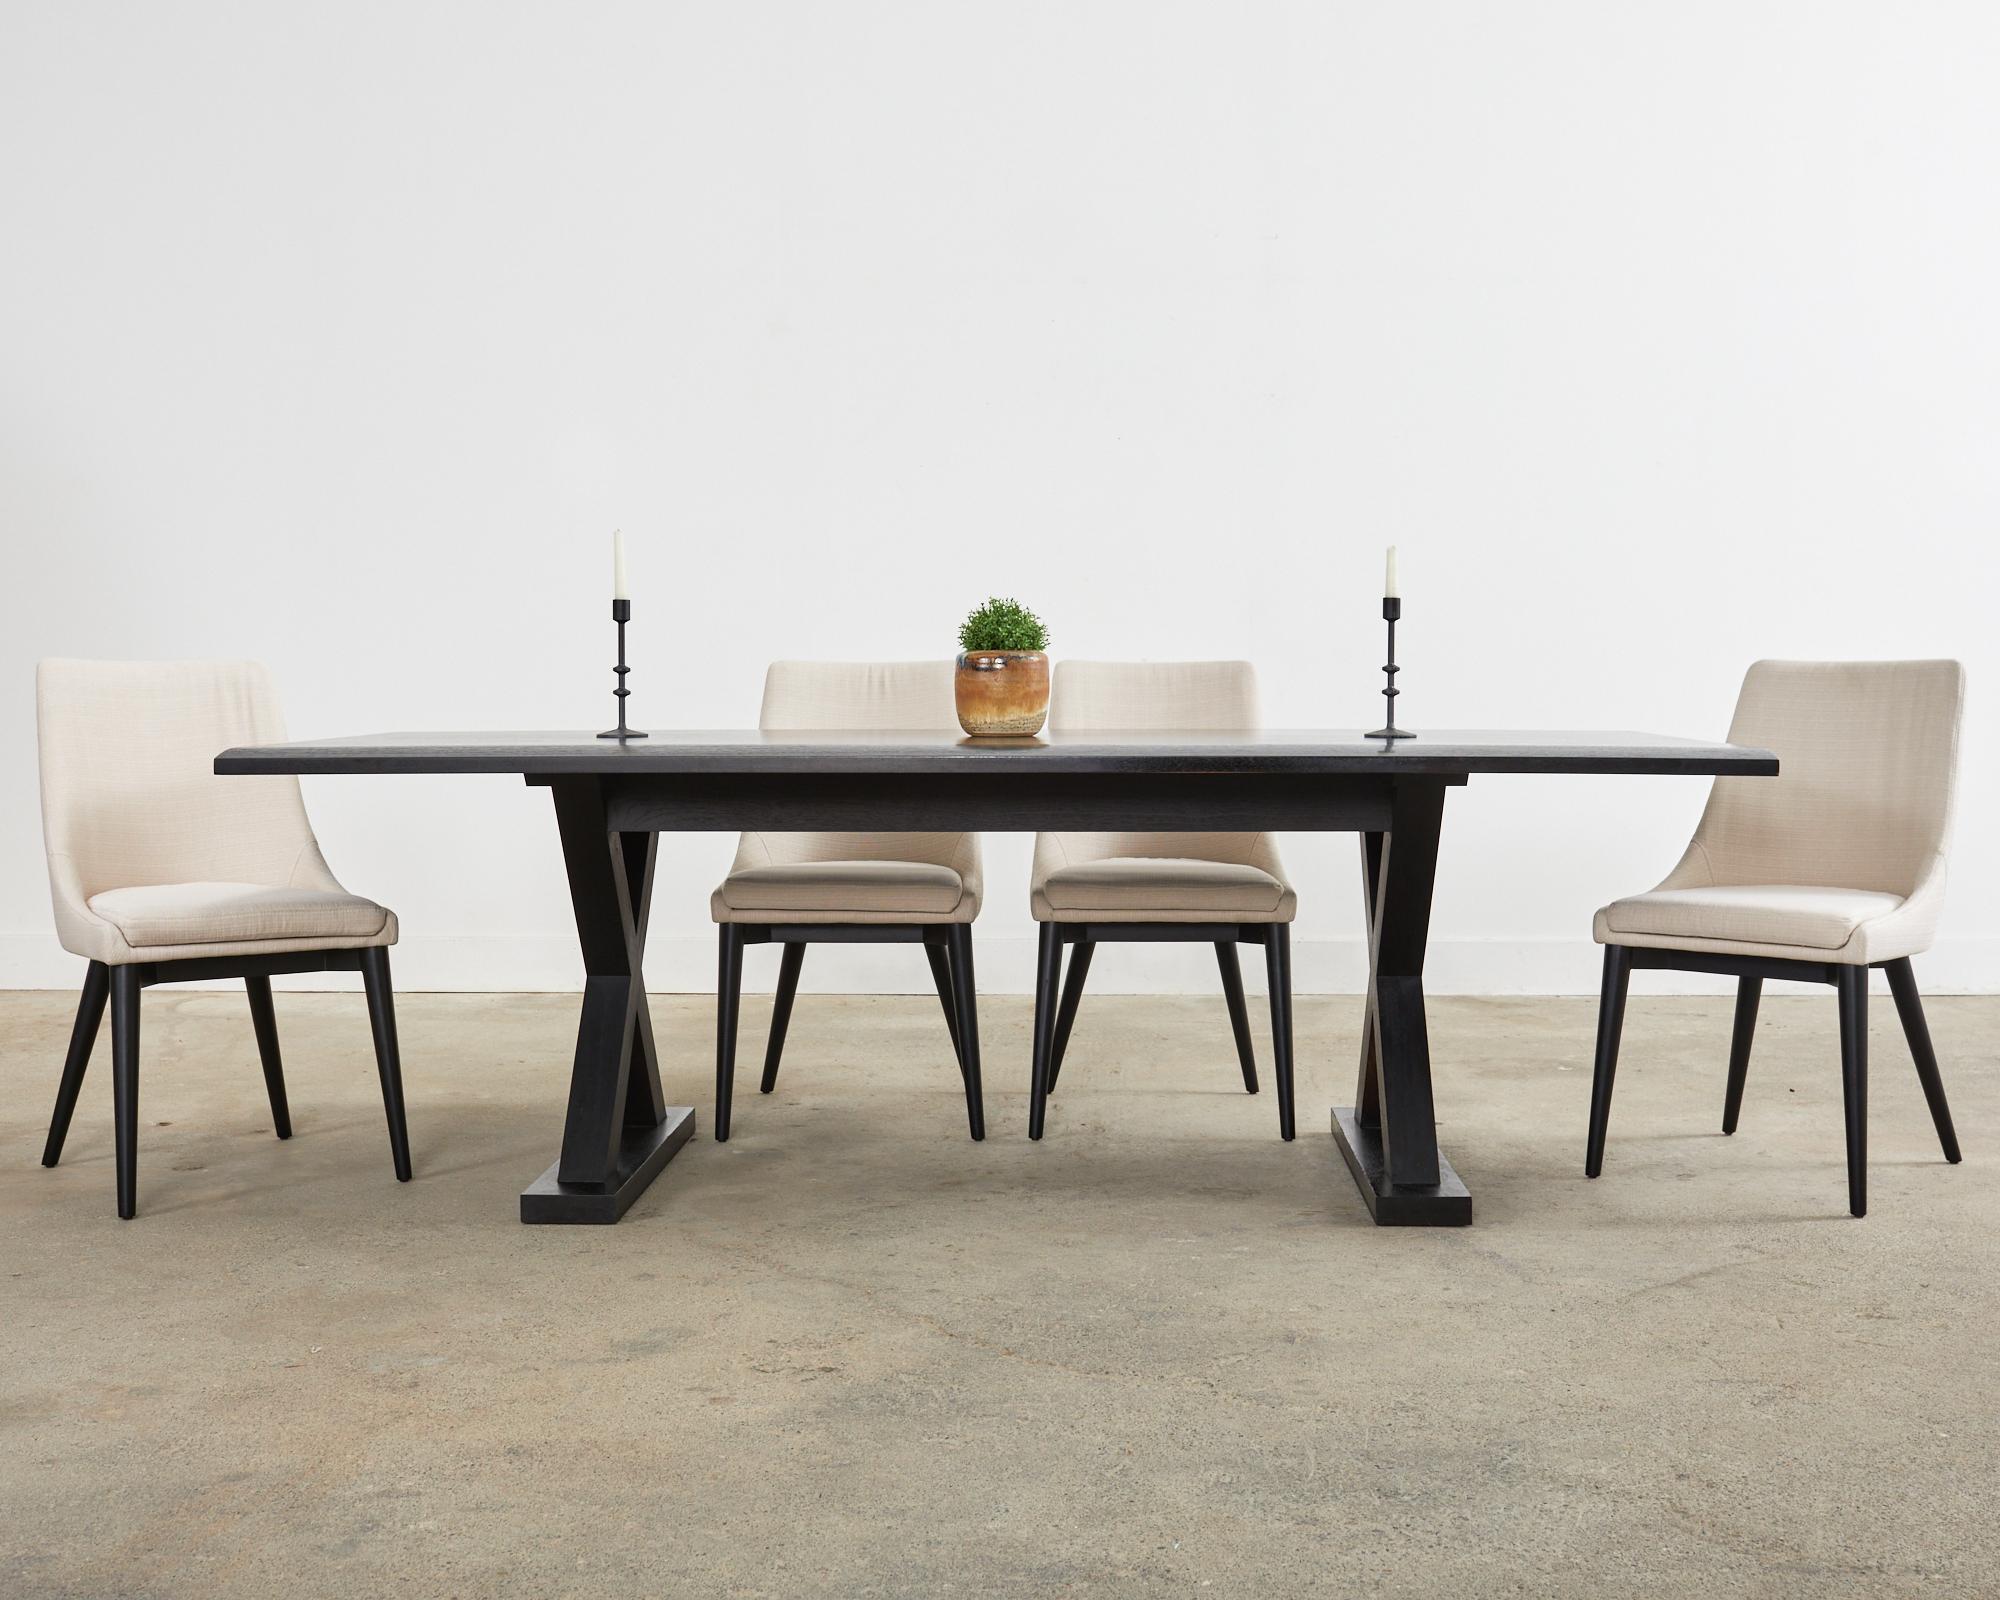 La perfection moderne minimaliste est l'interprétation de Christian Liaigre de la table de salle à manger de ferme. La table de coursier a été conçue pour HOLLY HUNT et fabriquée à la main à partir de bois de chêne dur ébonisé. Le plateau